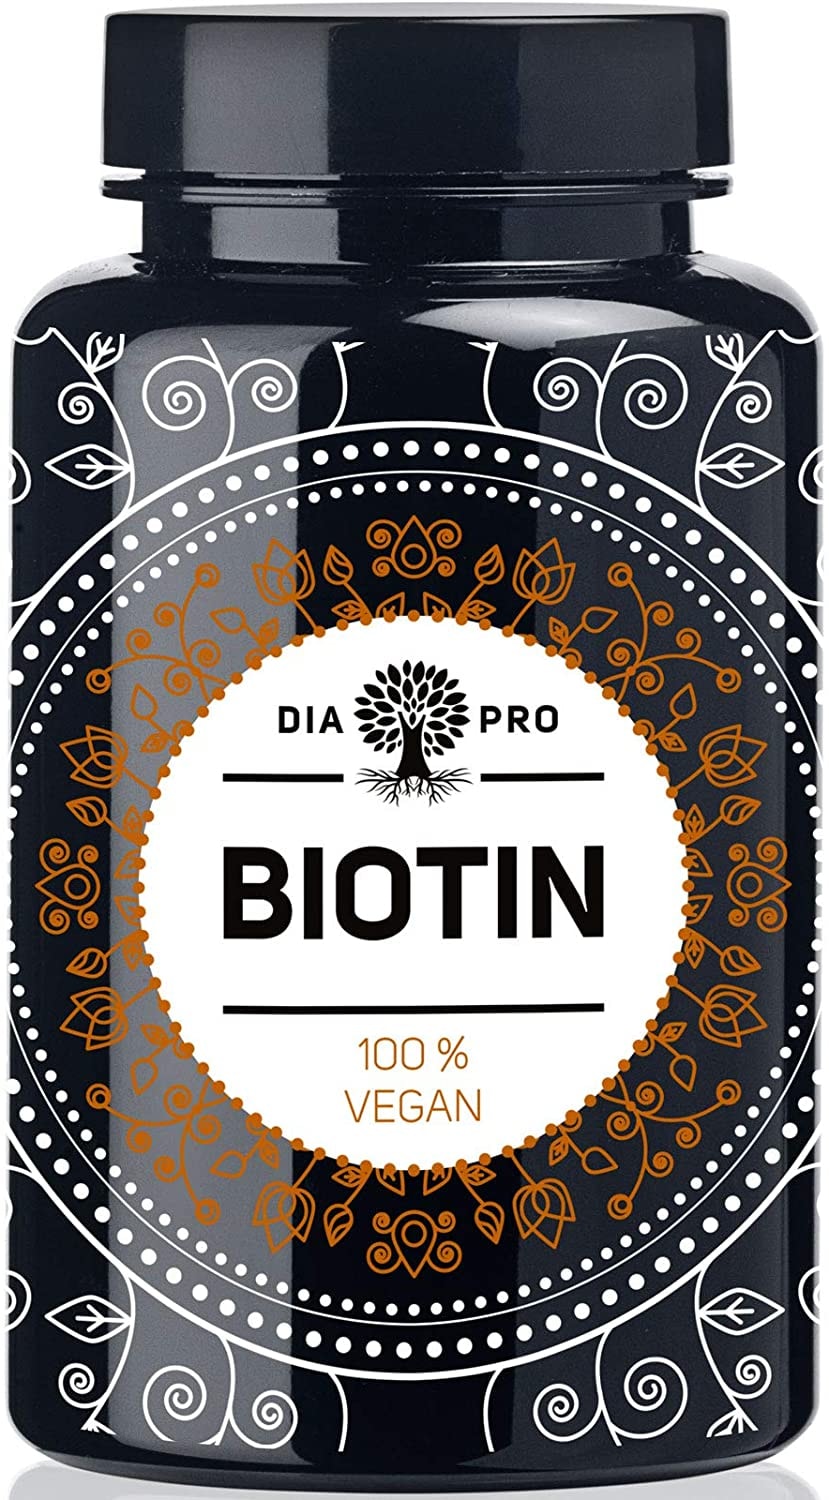 DiaPro® Hochdosierte Biotin-Tabletten mit 10 mg Biotin pro Tablette Auch als Vitamin B7 bzw. Vitamin H bekannt 365 Stück Jahresvorrat. 100% Vegan Laborgeprüft Made in Germany